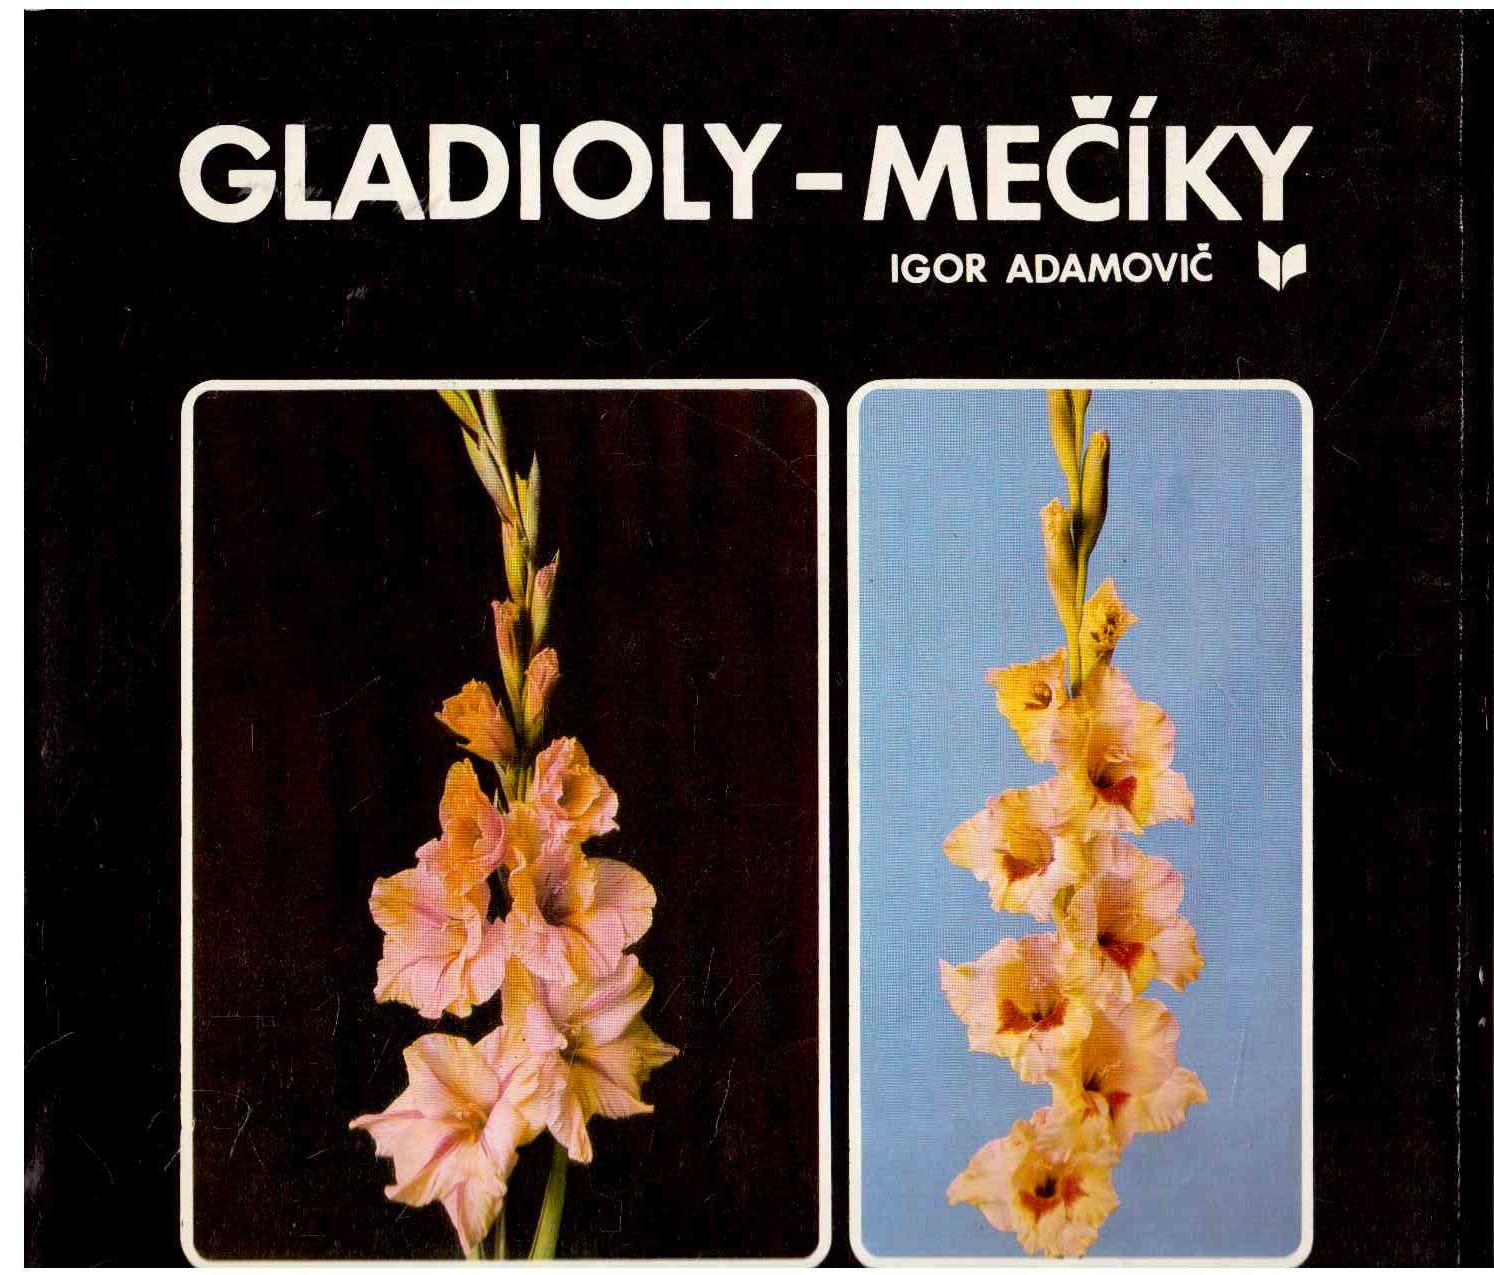 Gladioly-Meciky